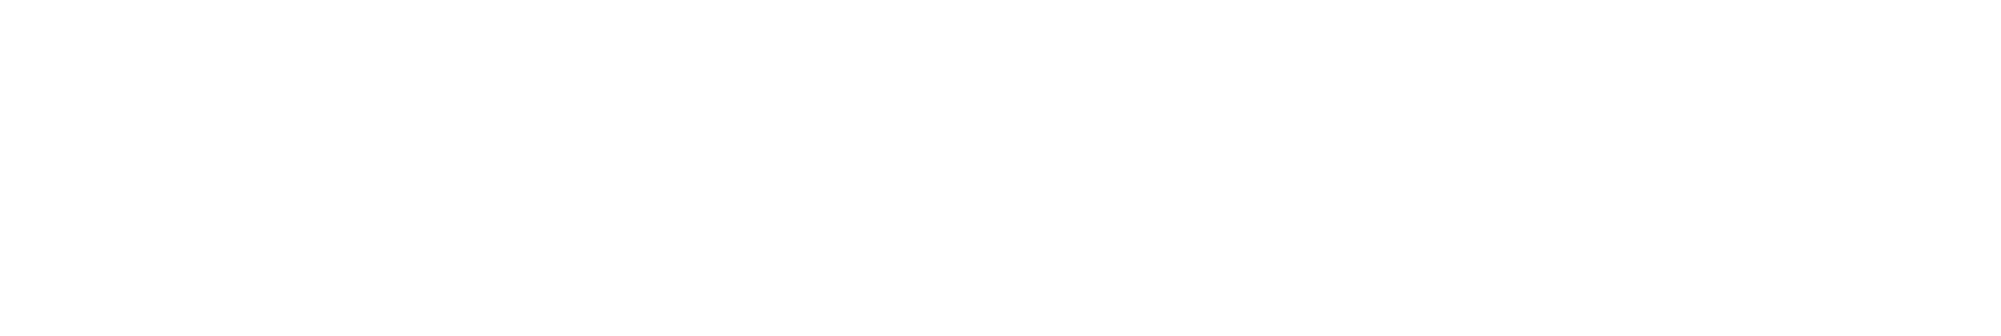 watchshopping_logo